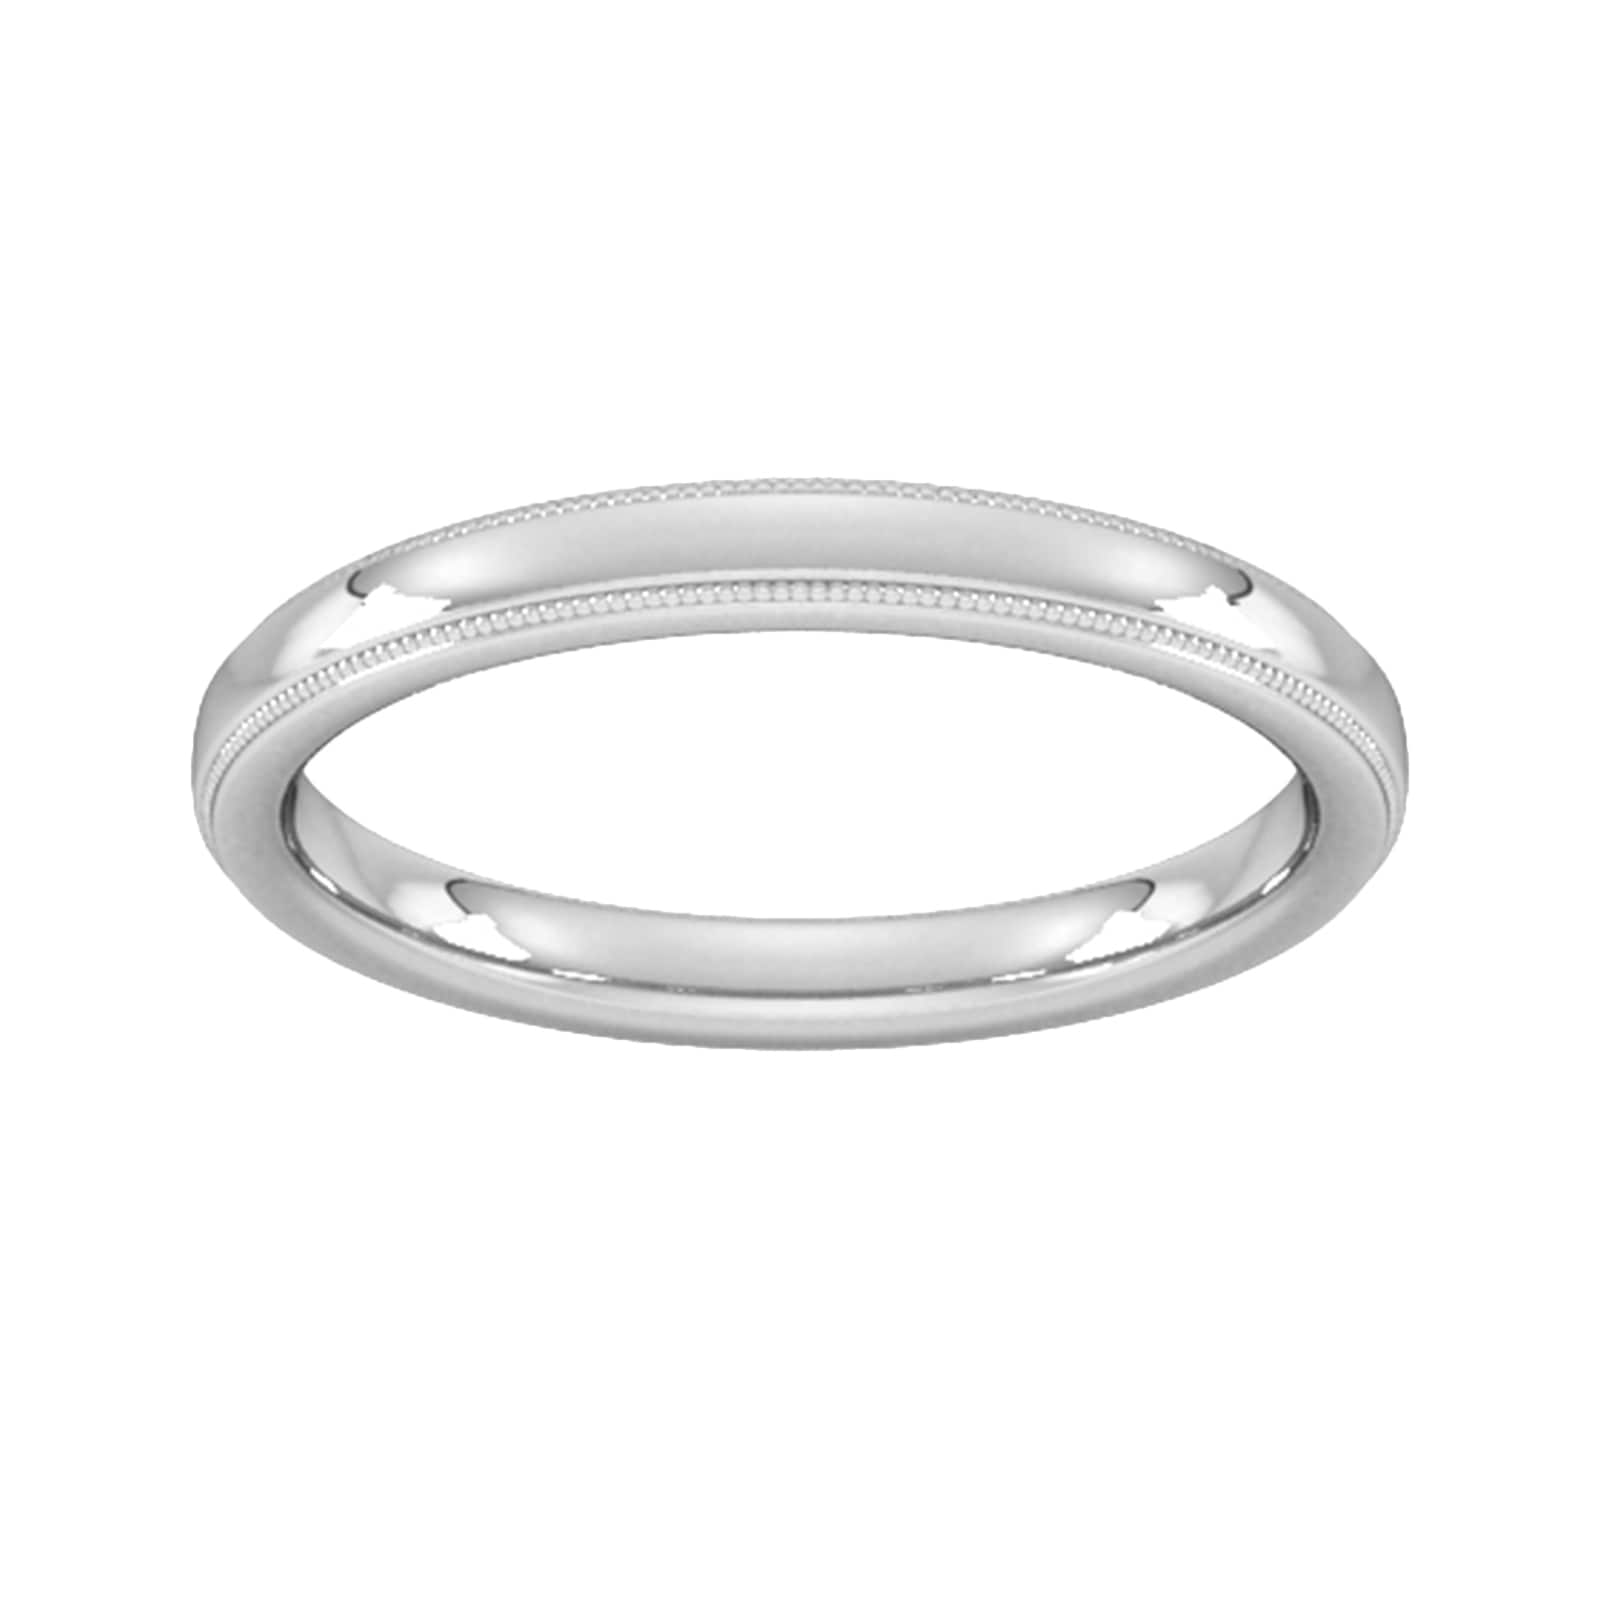 2.5mm Slight Court Standard Milgrain Edge Wedding Ring In 18 Carat White Gold - Ring Size P